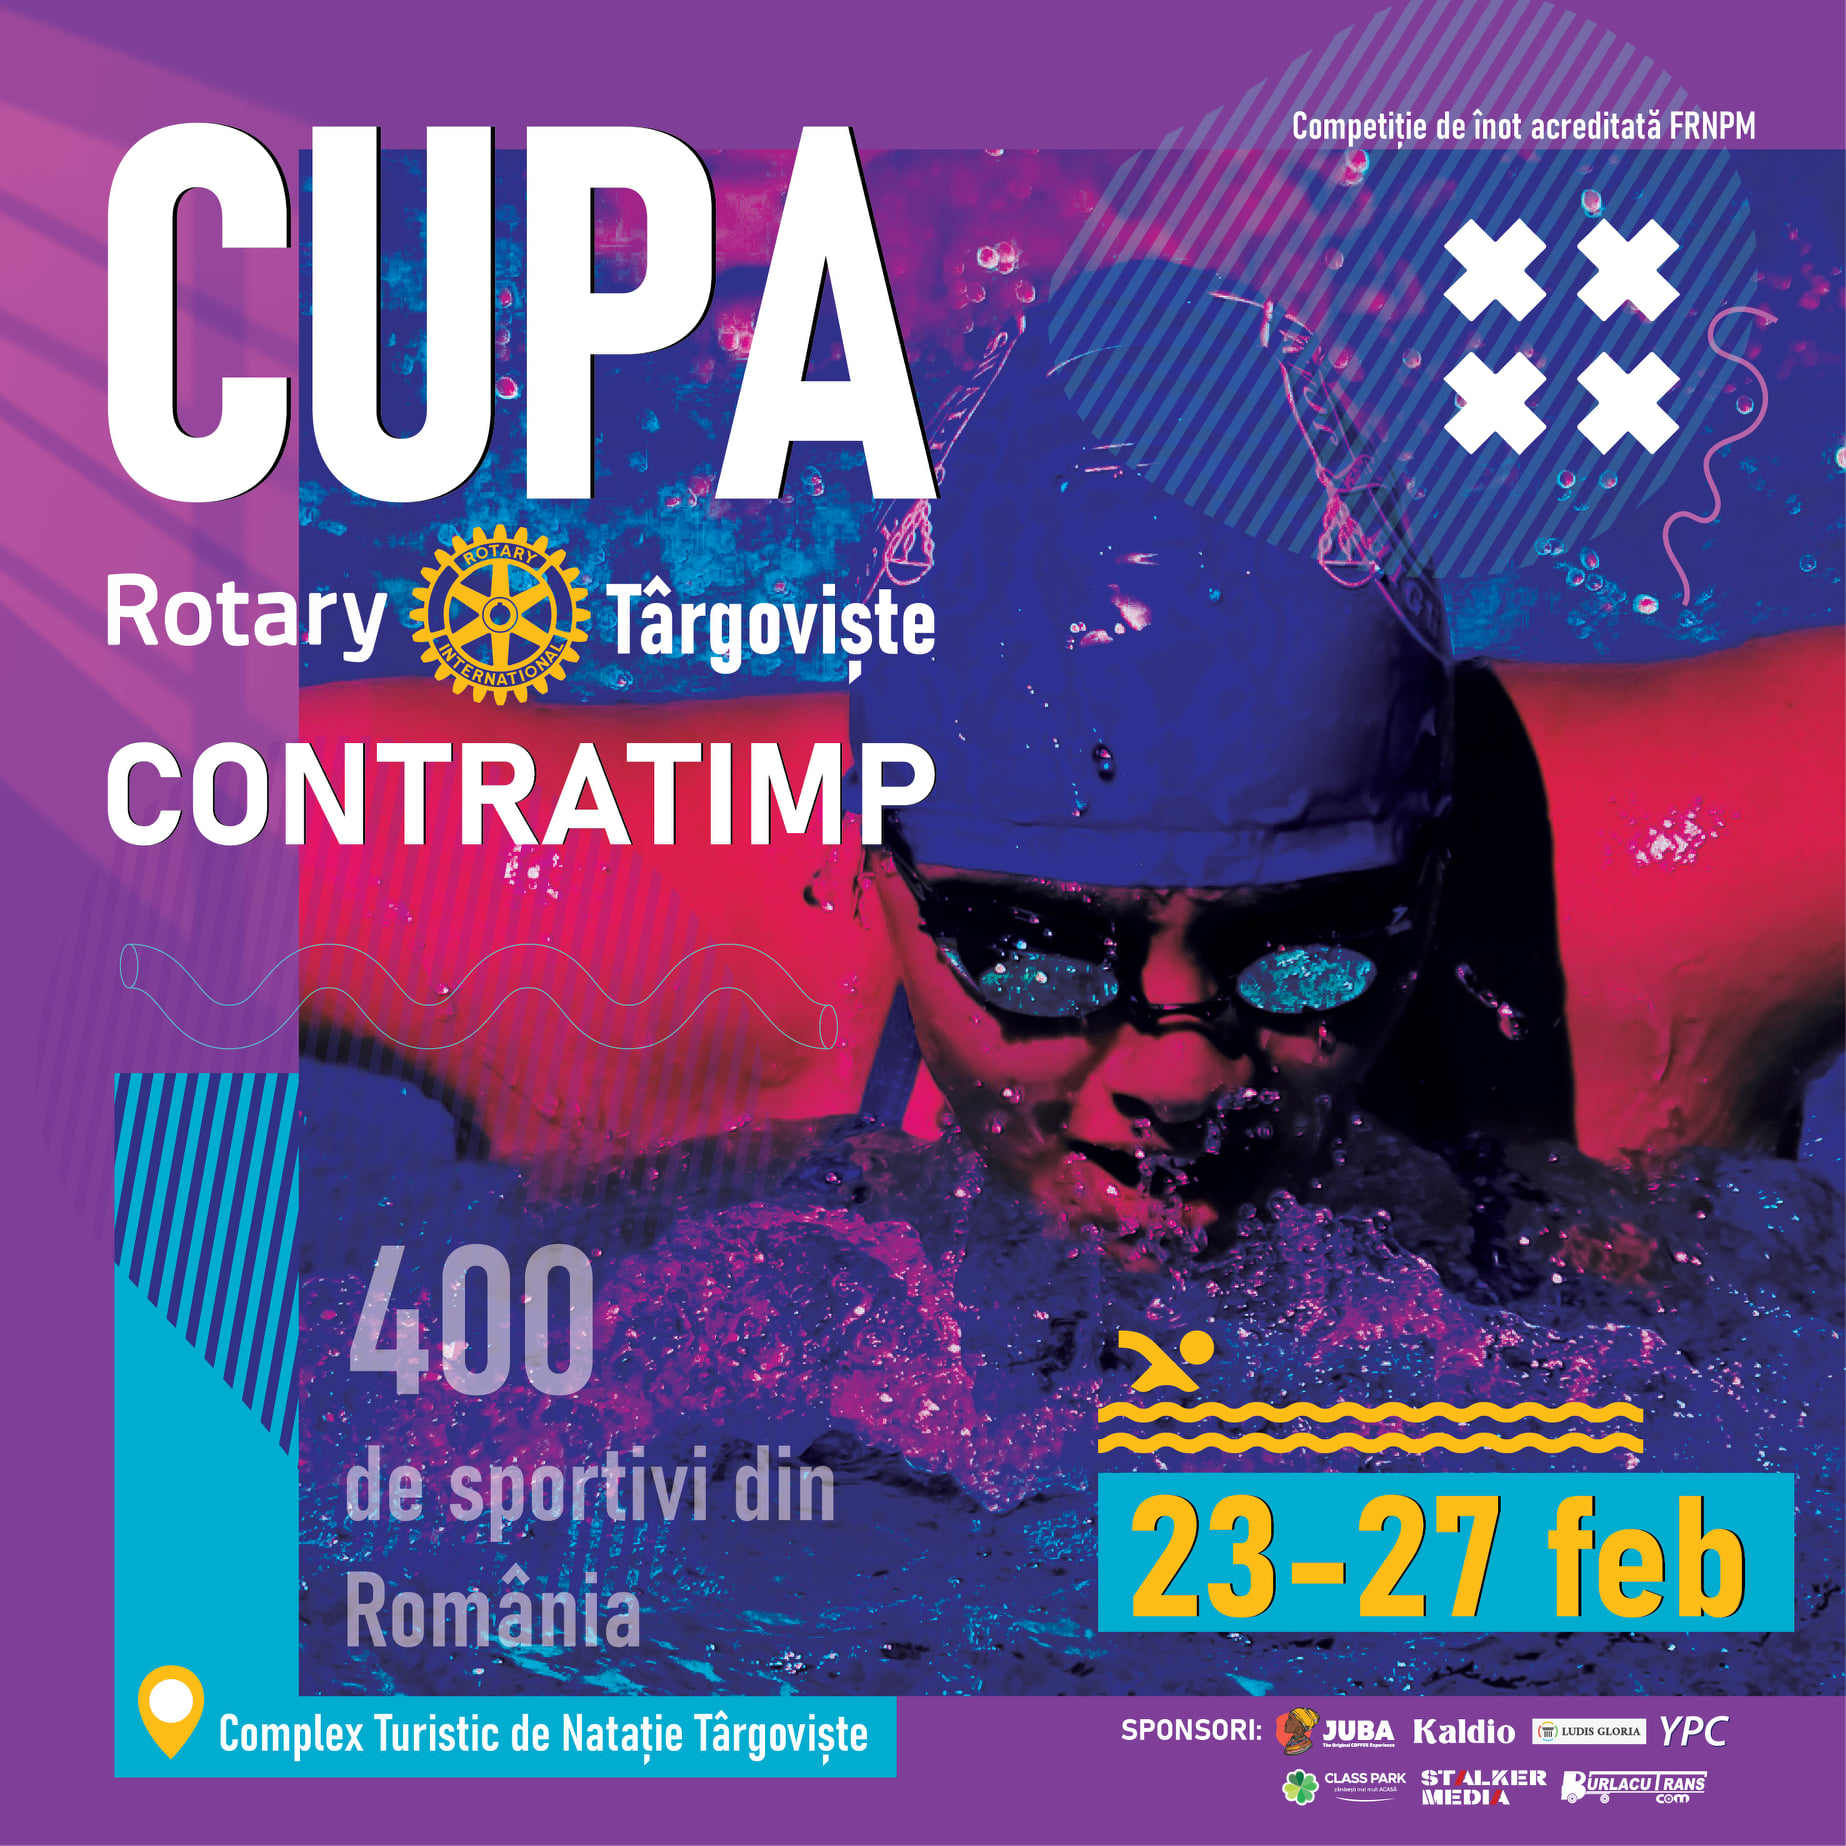 Cupa Rotary